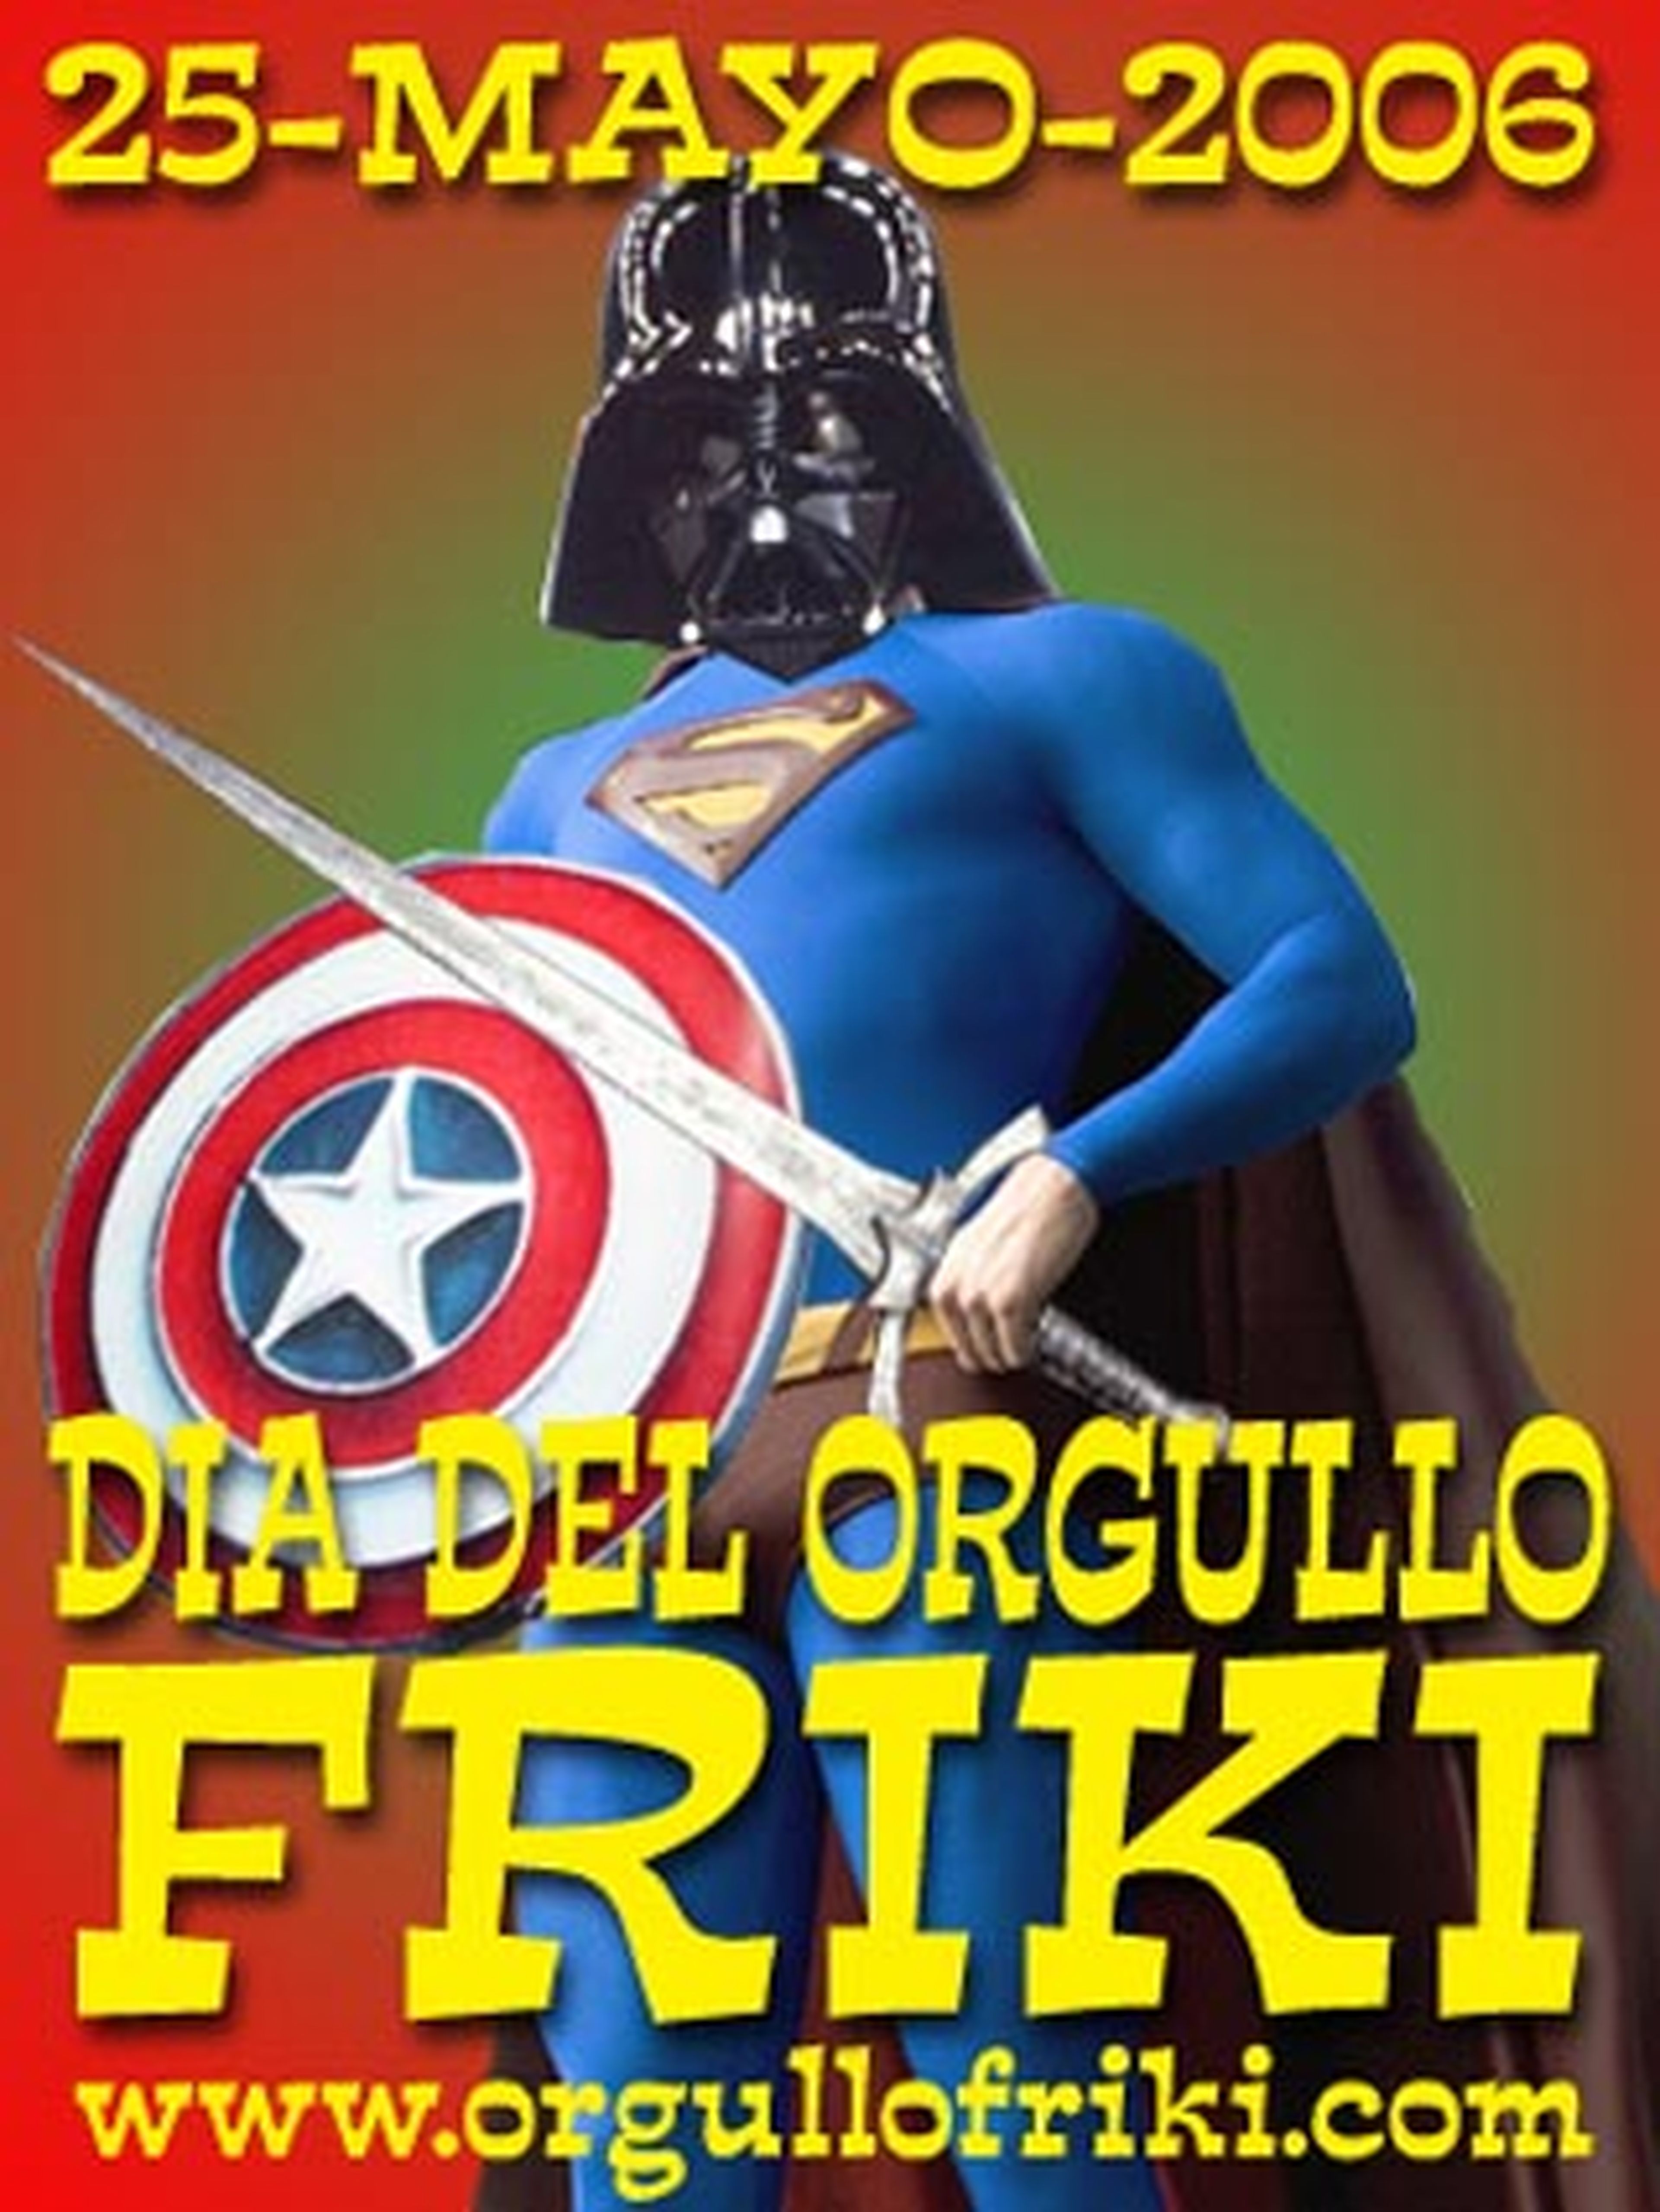 Dial delOrgullo Froki 2006